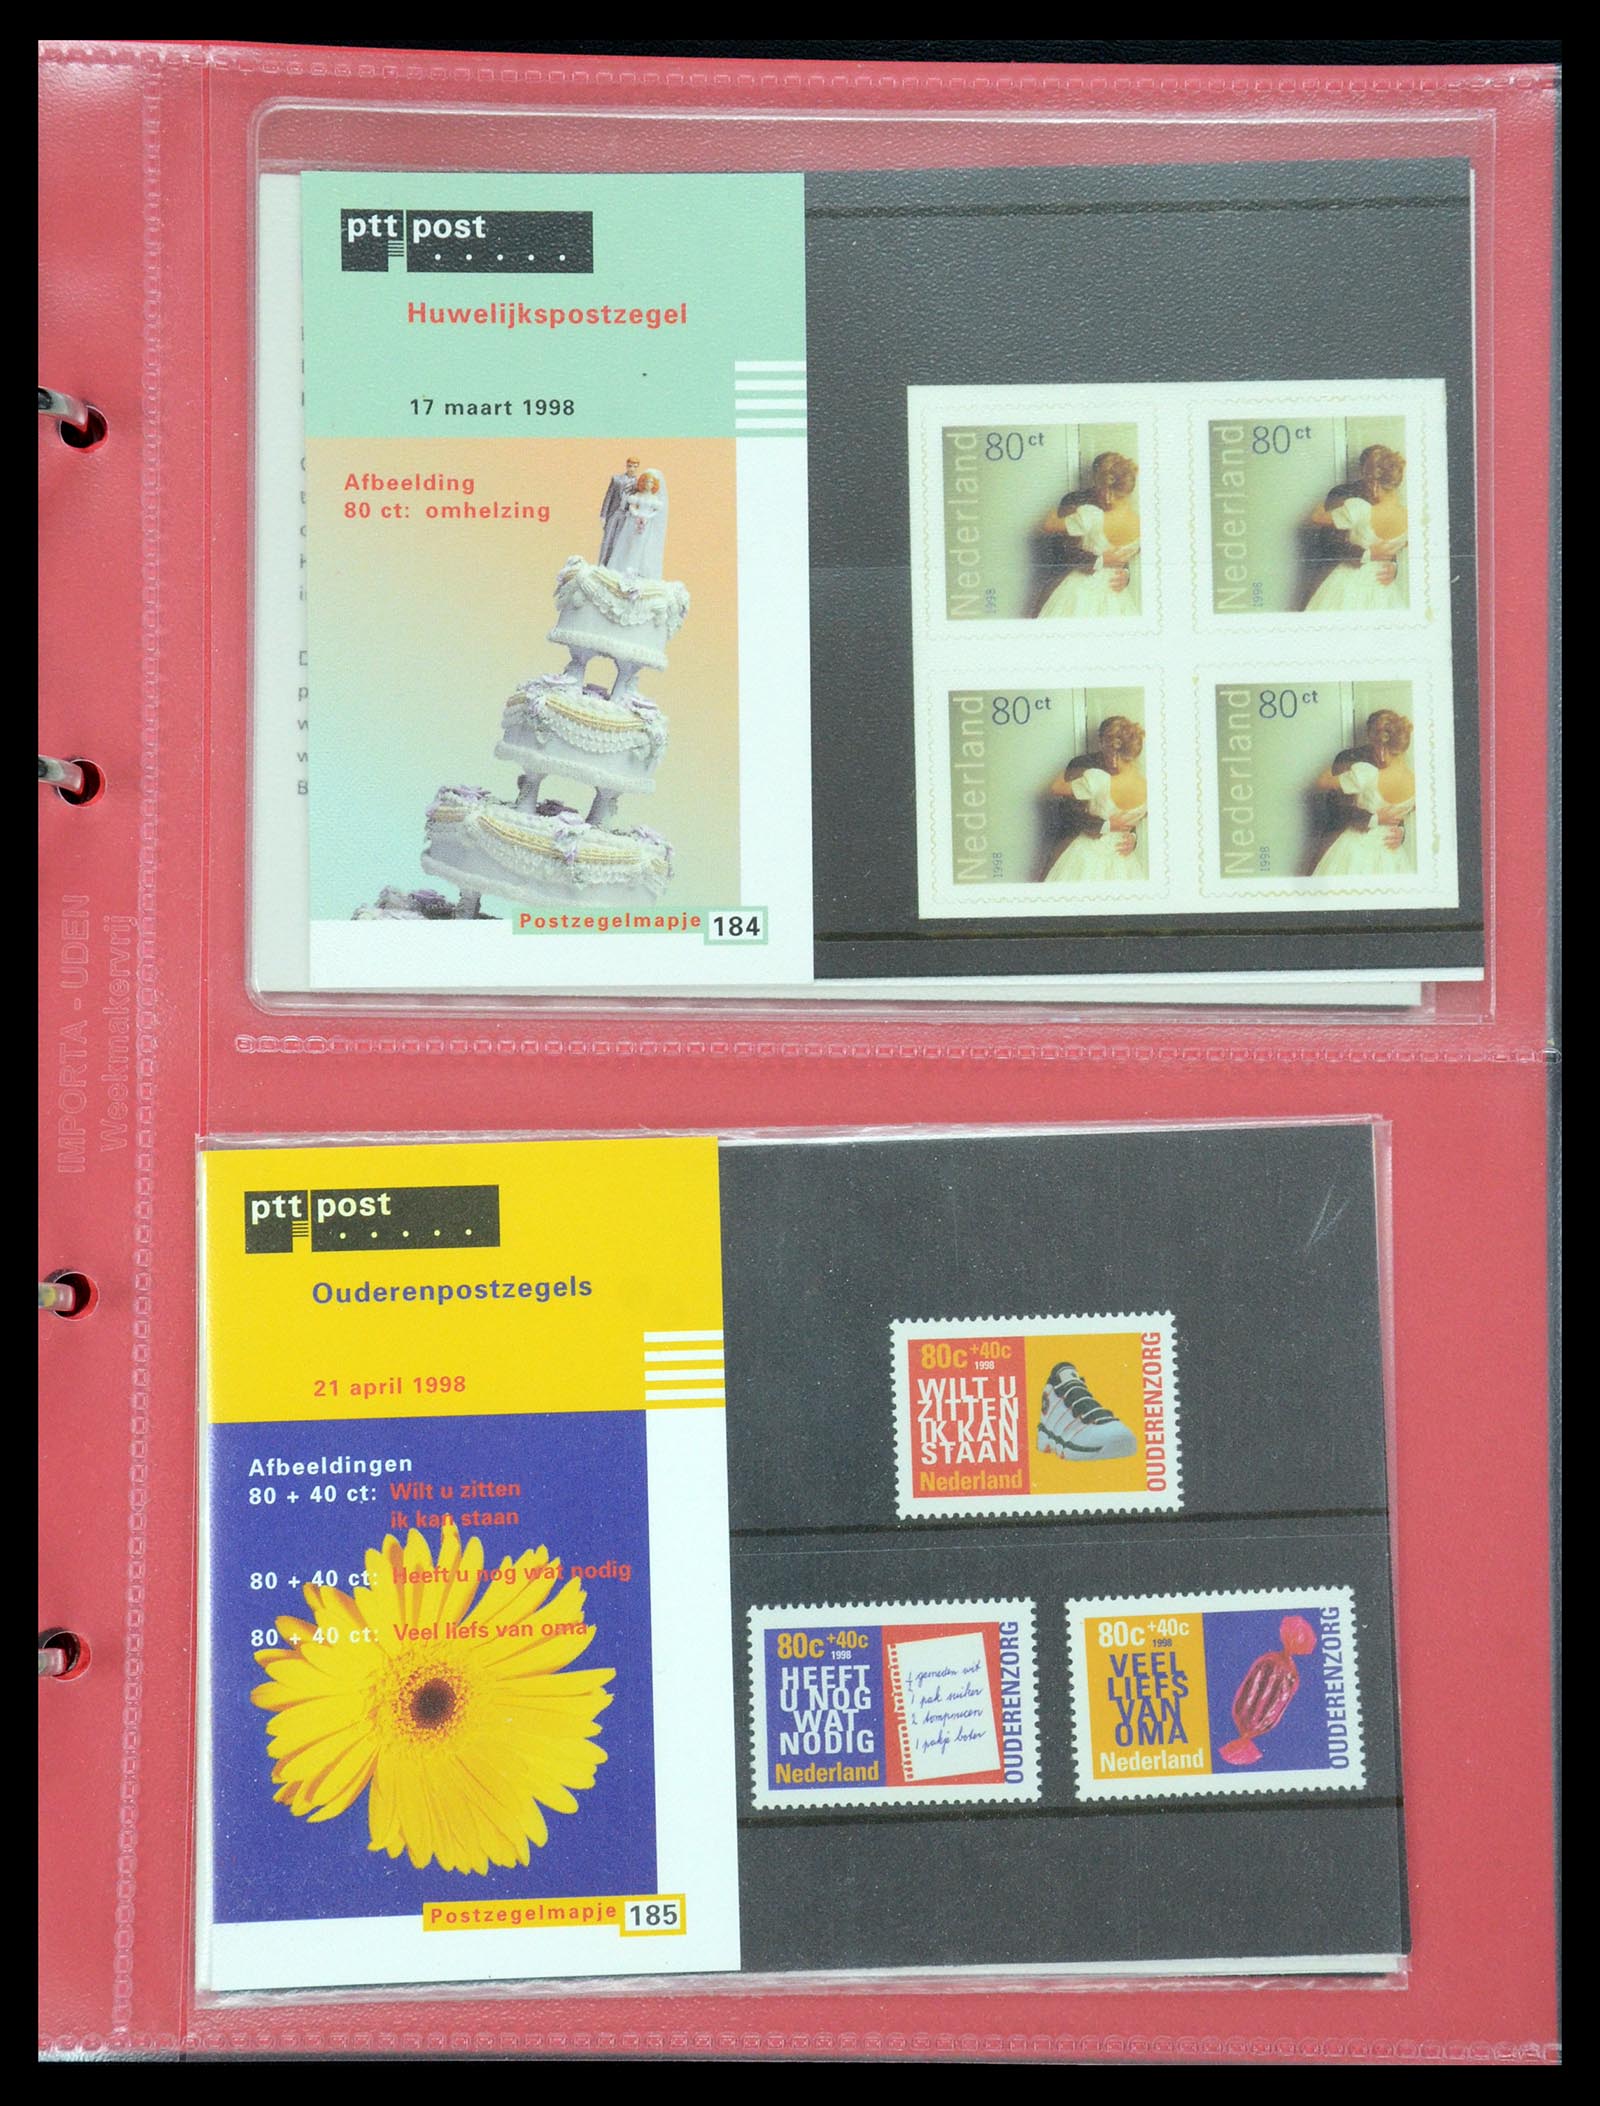 35692 095 - Stamp Collection 35692 Netherlands presentation packs 1982-2021!!